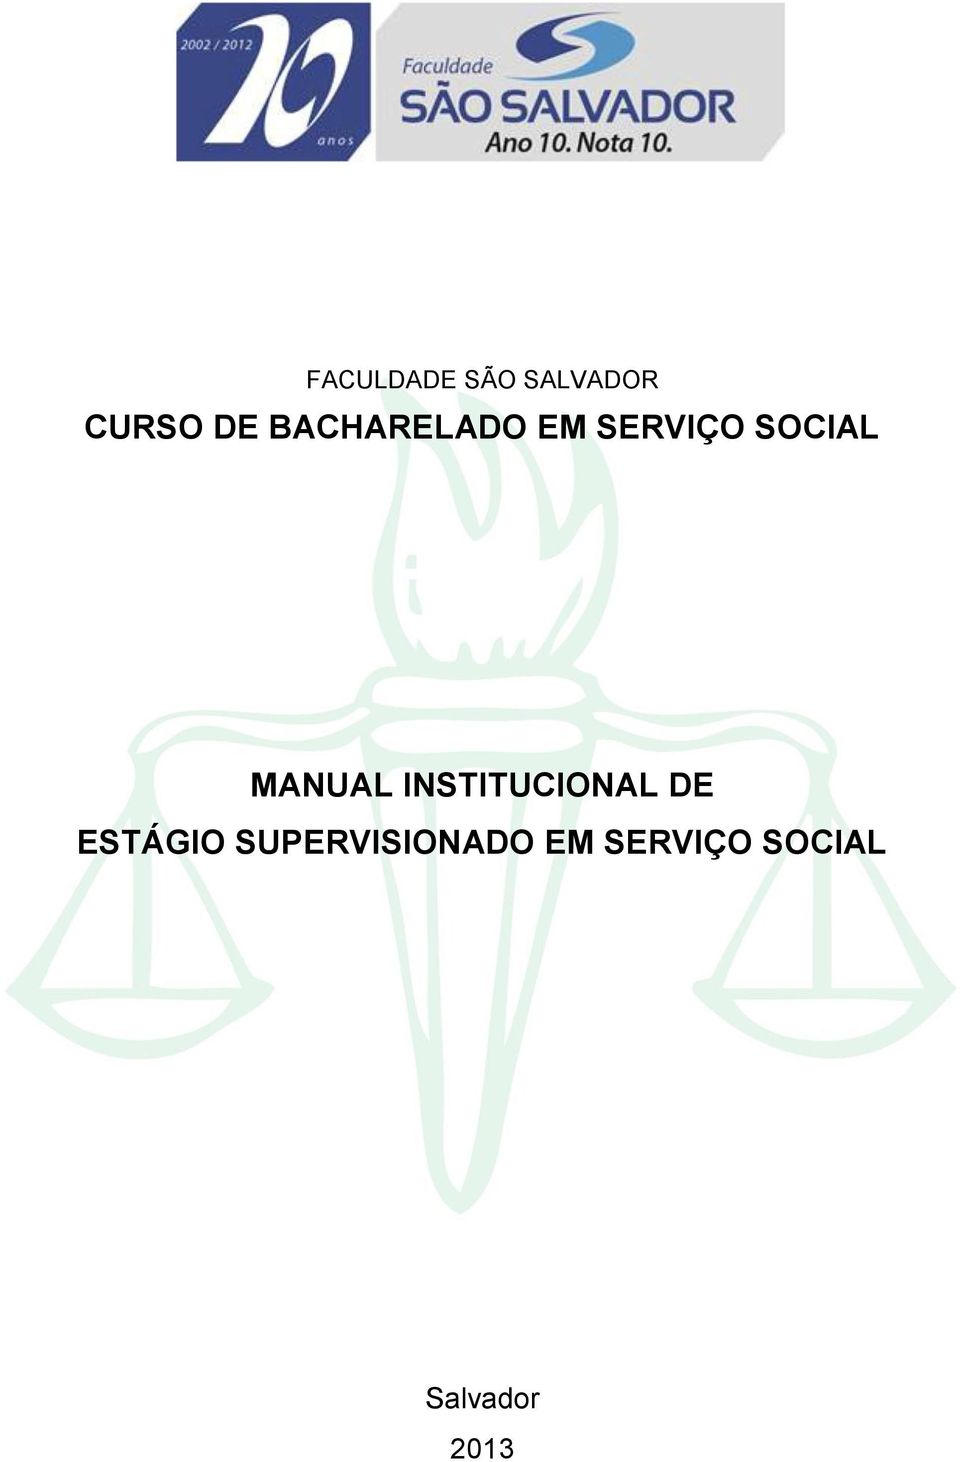 MANUAL INSTITUCIONAL DE ESTÁGIO